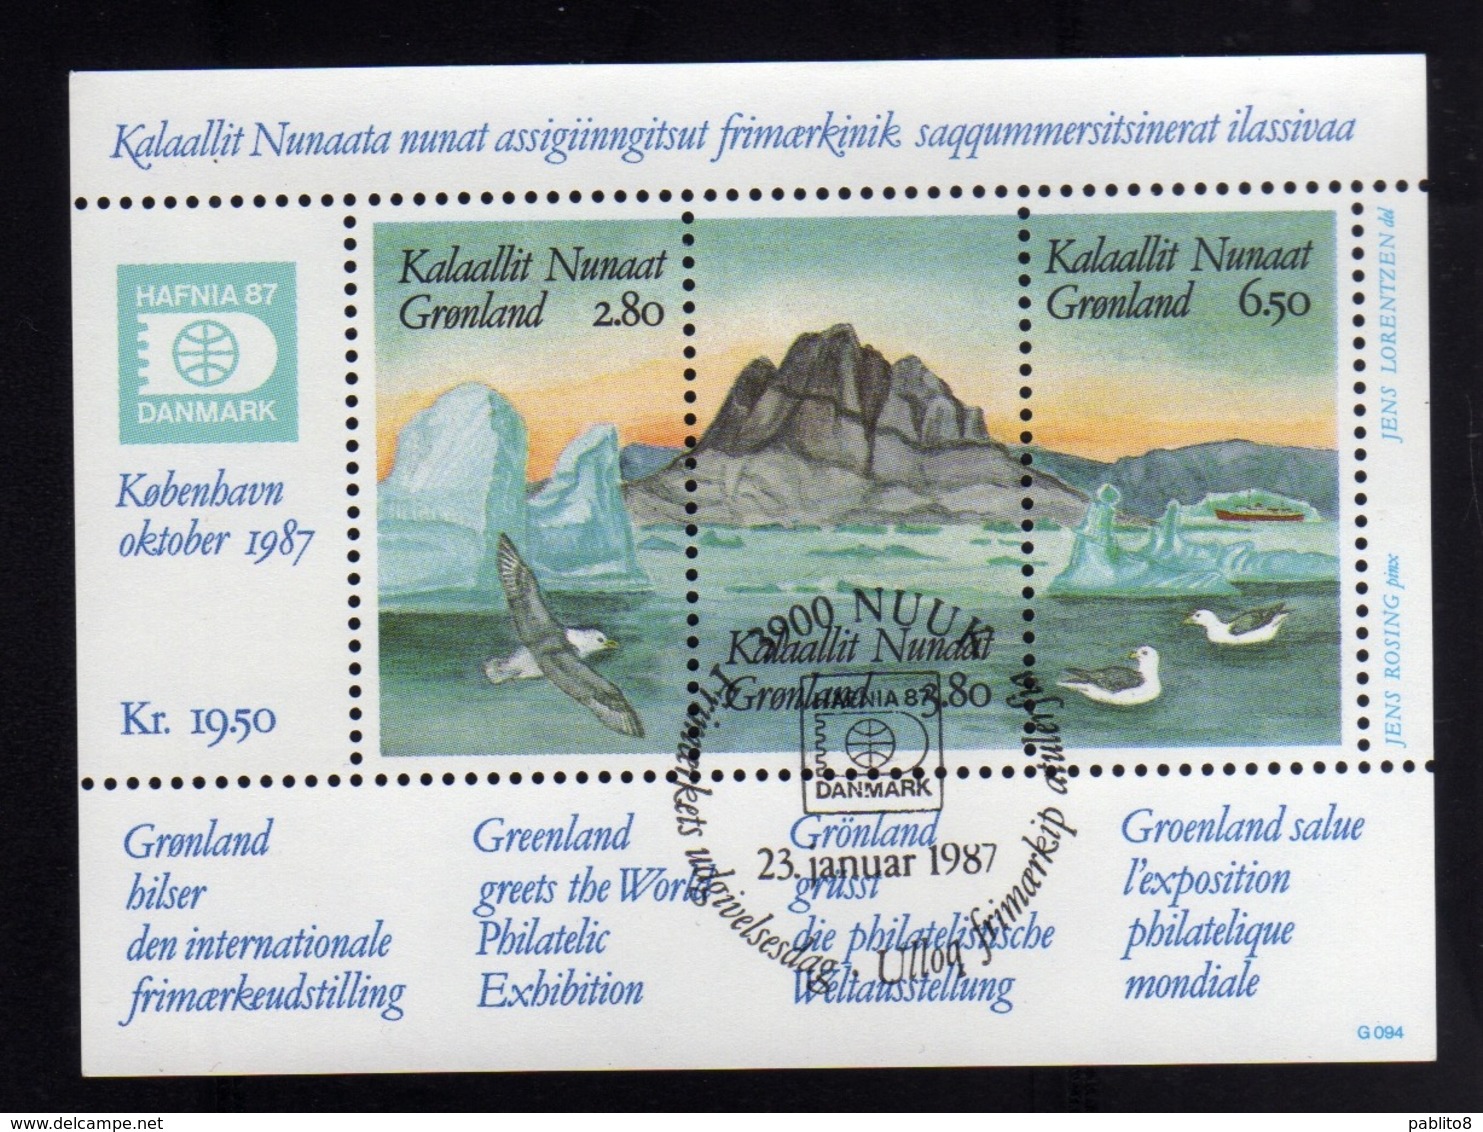 GREENLAND GRONLANDS GROENLANDIA GRØNLAND 1987 HAFNIA 87 Stamp Exhibition PHILATELIC SHEET FOGLIETTO FIRST DAY CANCEL FDC - Blocchi